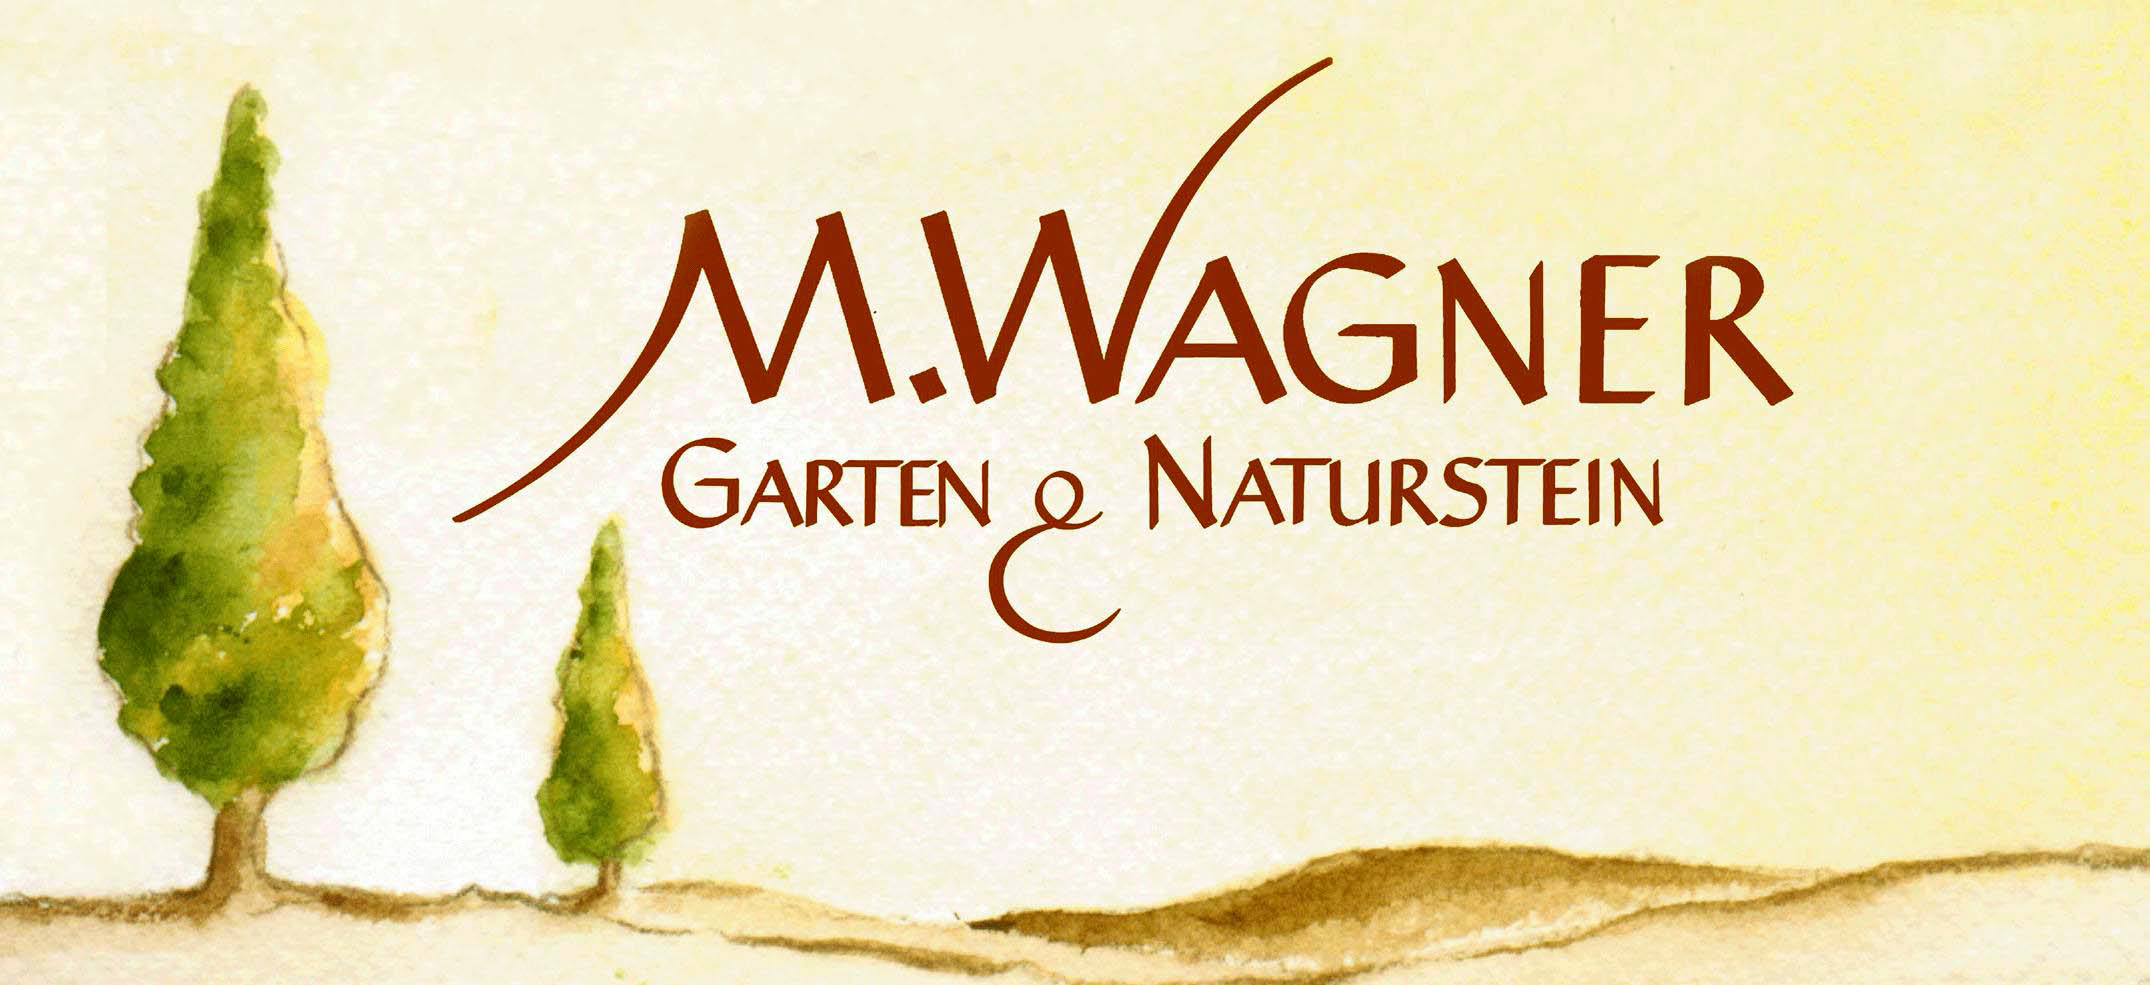 Naturstein Paradies M. Wagner seit 2001 Direktvertrieb